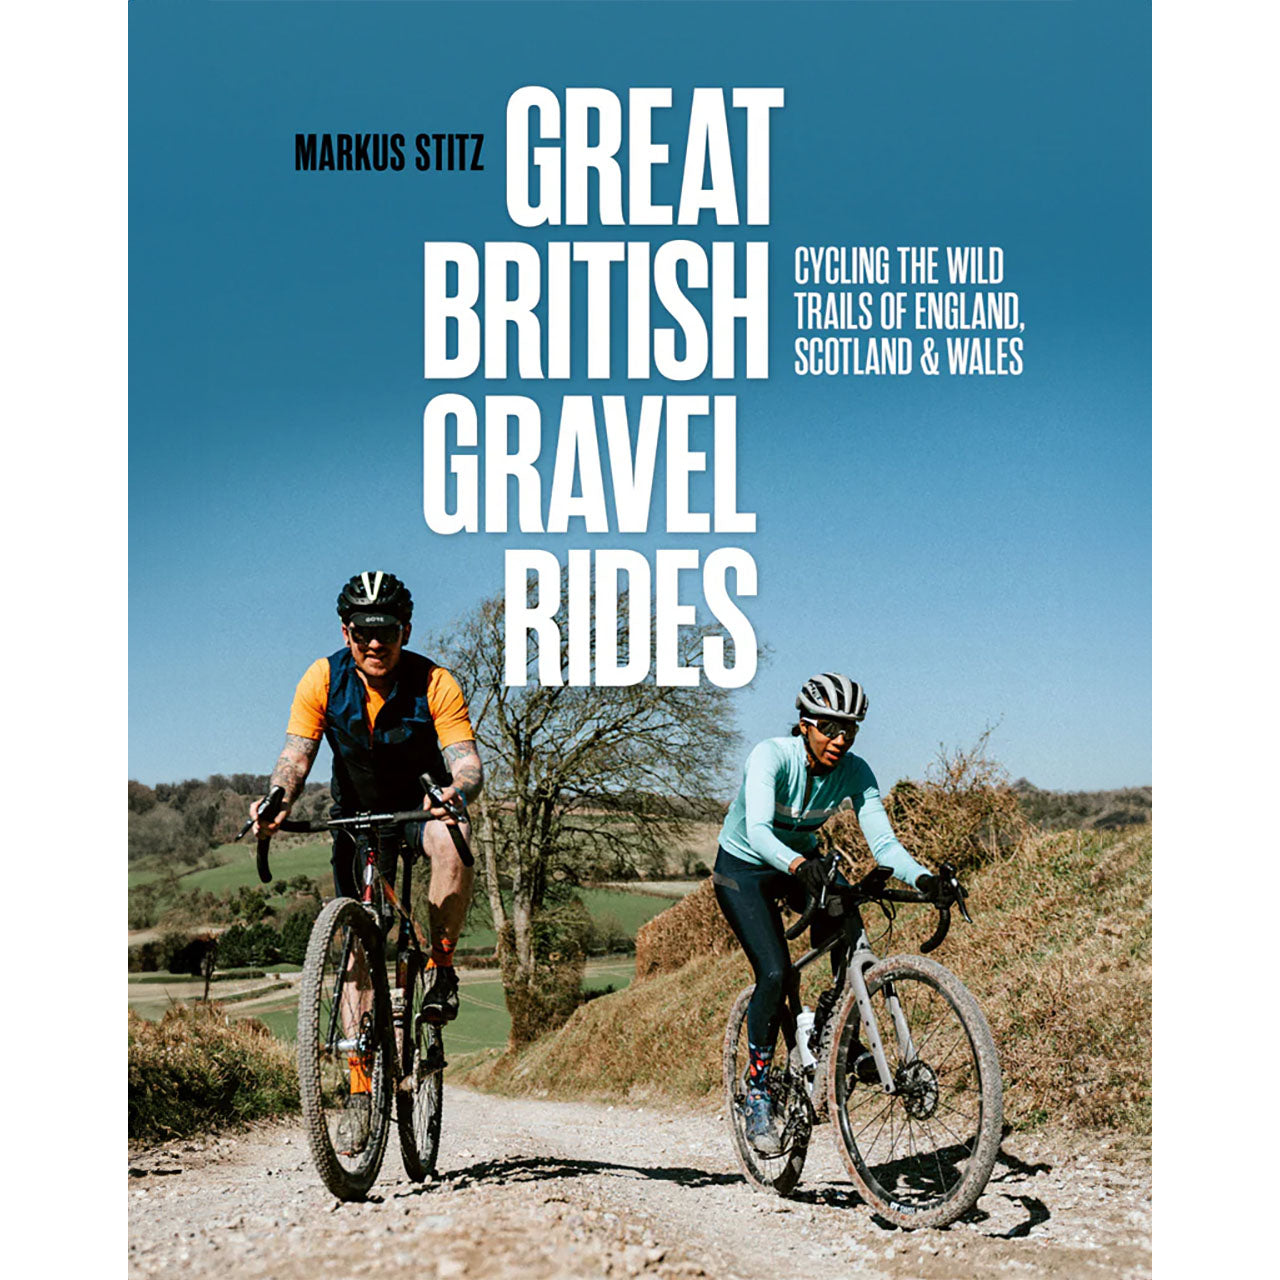 Great British Gravel Rides by Markus Stitz